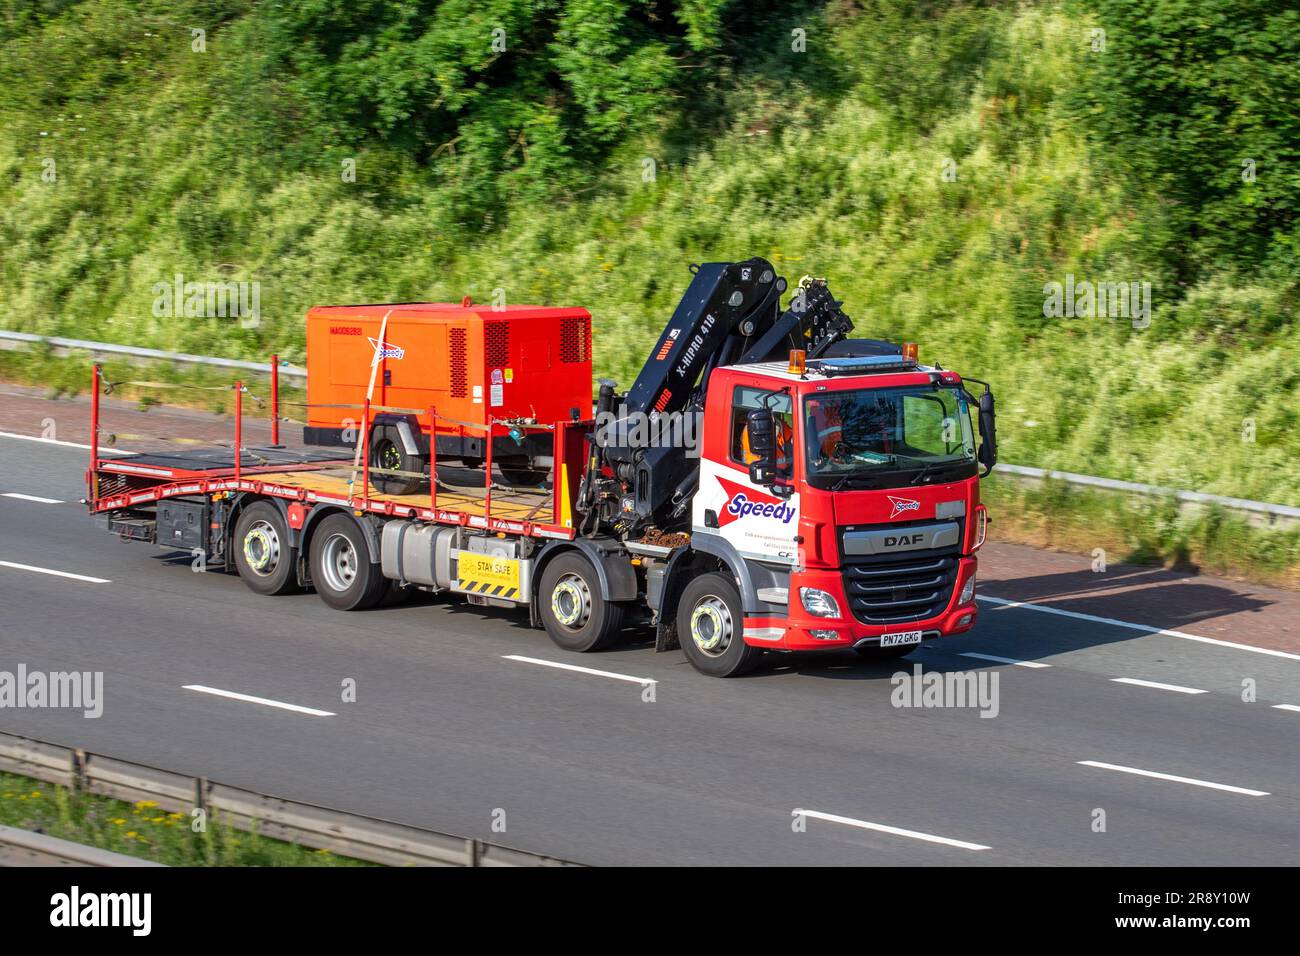 https://c8.alamy.com/compes/2r8y10w/camiones-de-entrega-speedy-hgv-haulage-camion-hiab-transporte-camion-transporte-de-carga-vehiculo-daf-cf-industria-europea-de-transporte-comercial-m61-en-manchester-reino-unido-2r8y10w.jpg